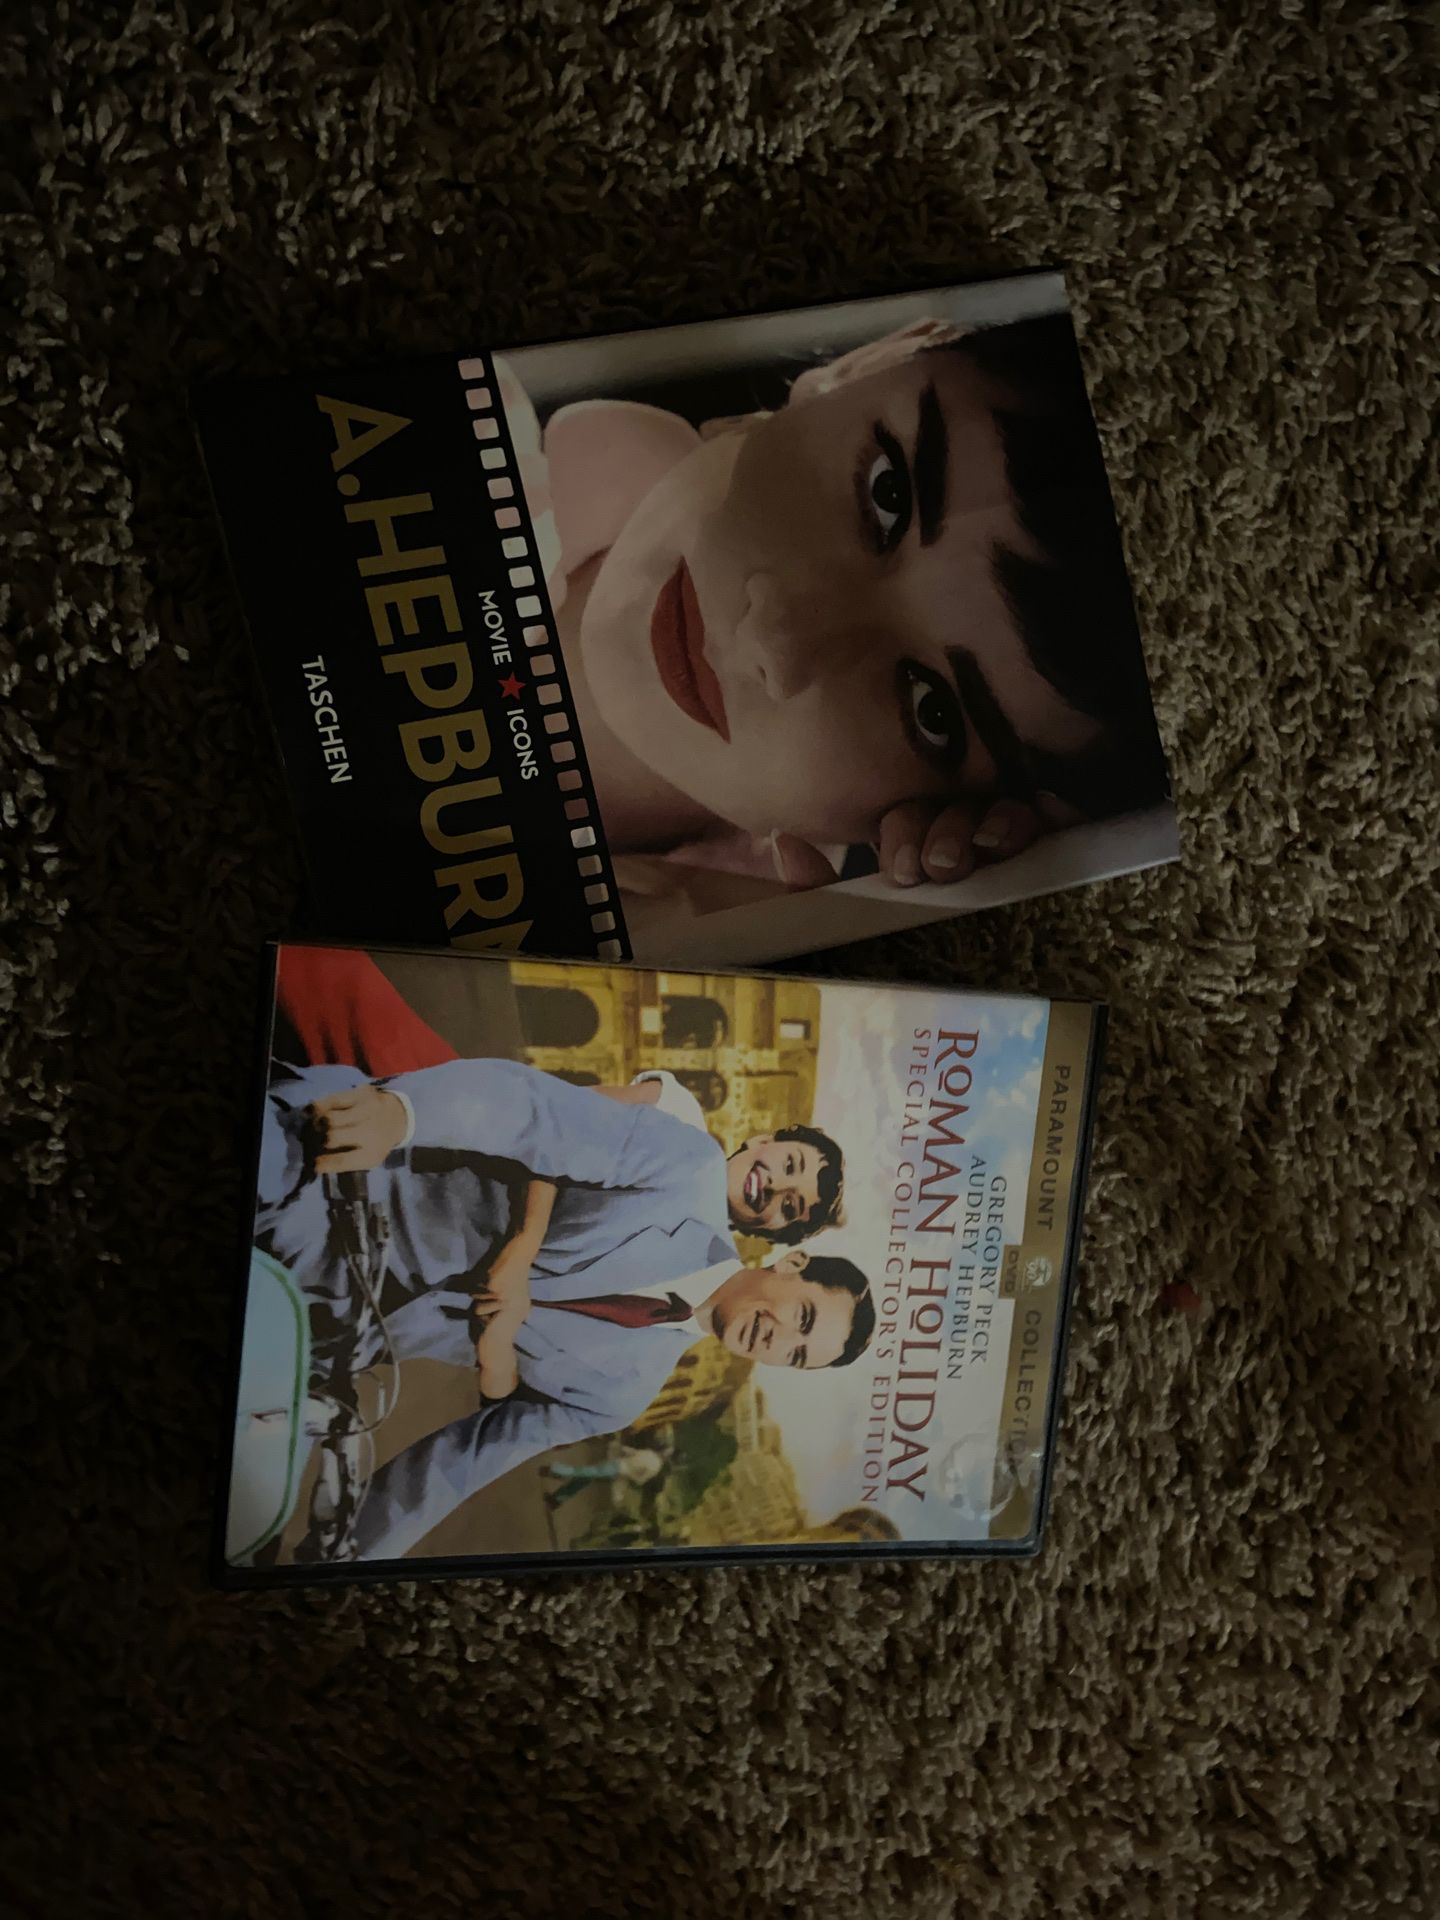 Audrey Hepburn dvd and book